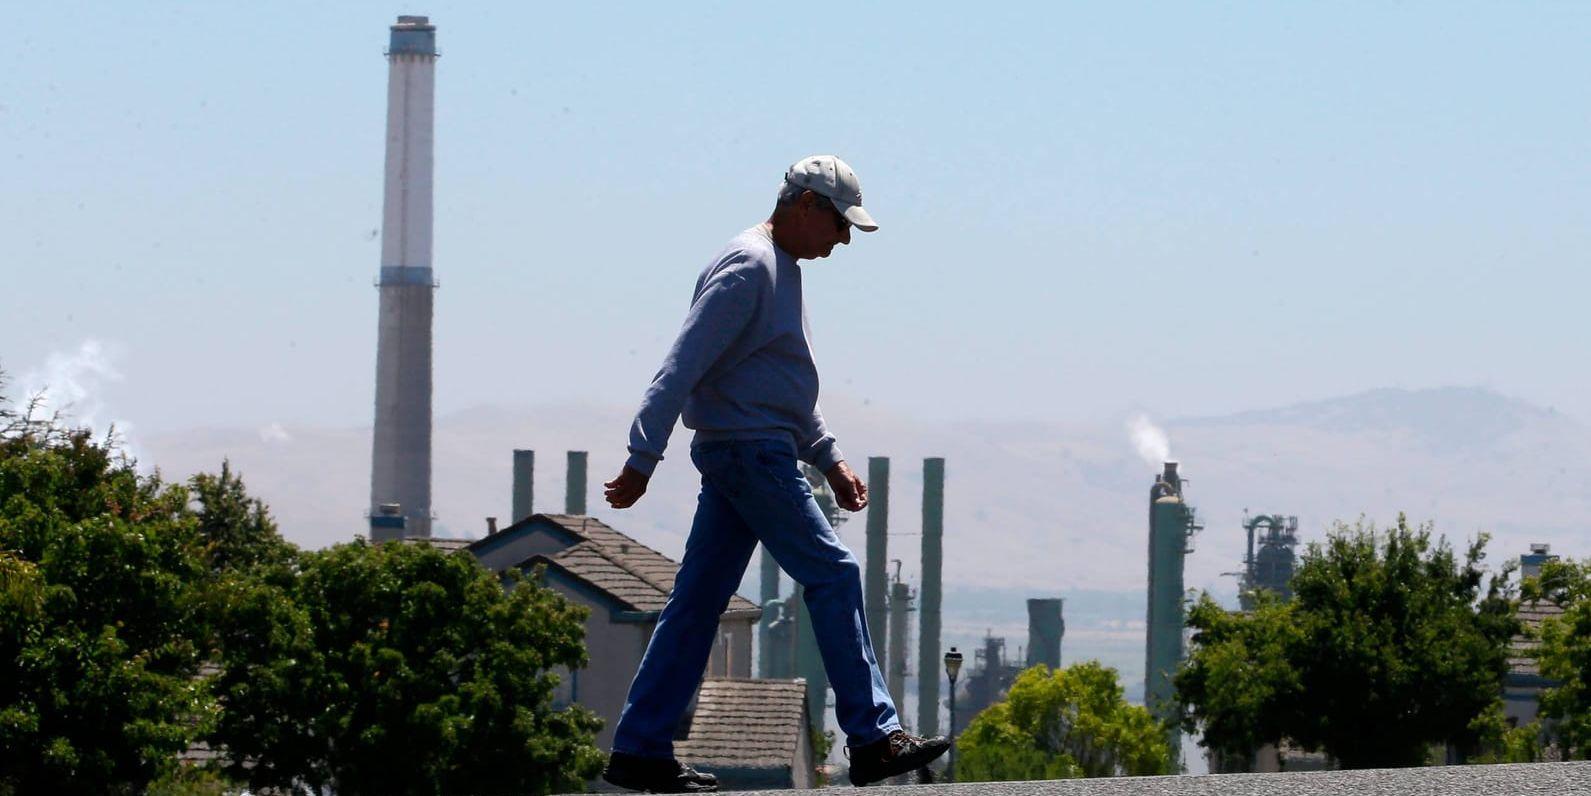 Valero Benicia-raffinaderiet i Kalifornien – en av de miljöbelastande fossilanläggningar som omfattas av handeln med utsläppsrätter.